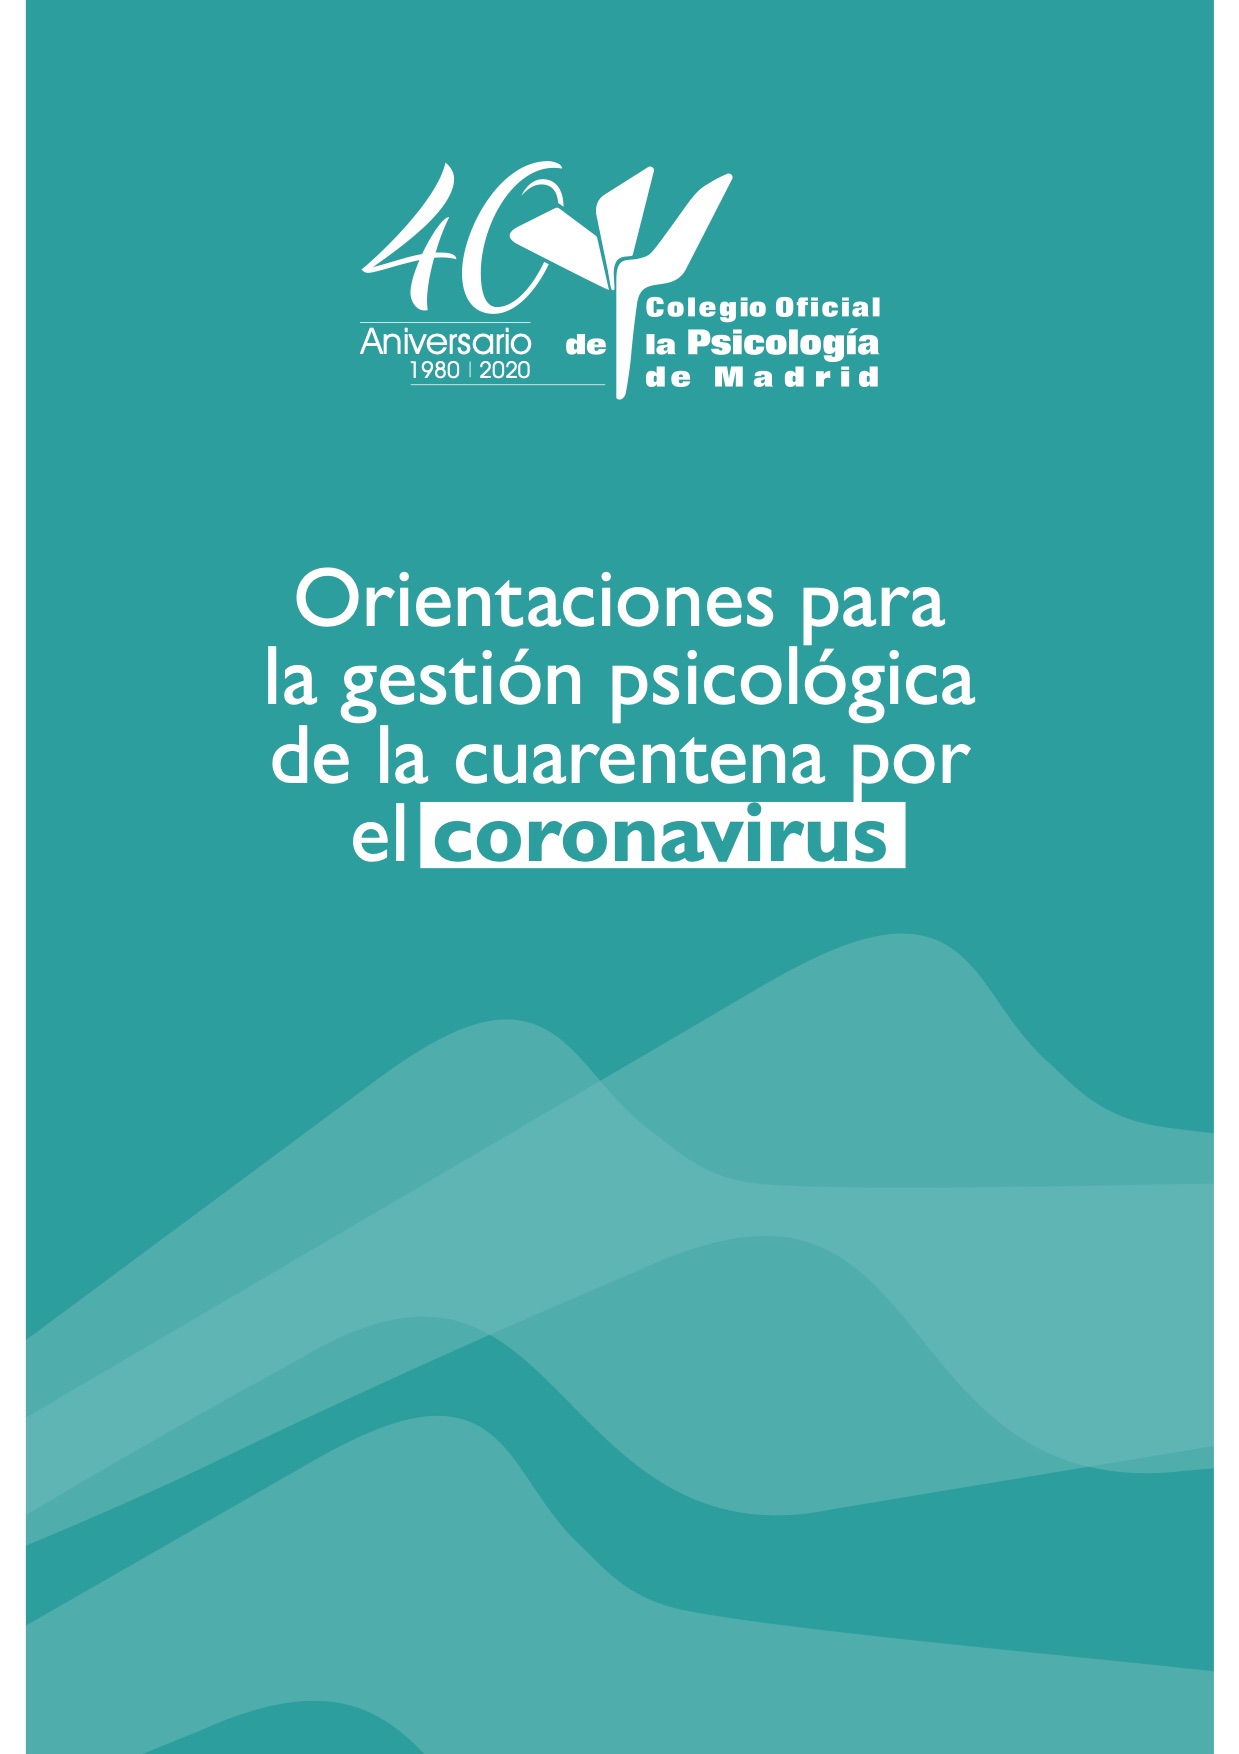 Orientaciones_para_la_gestion_psicologica_de_la_cuarentena_por_el_Coronavirus.jpg